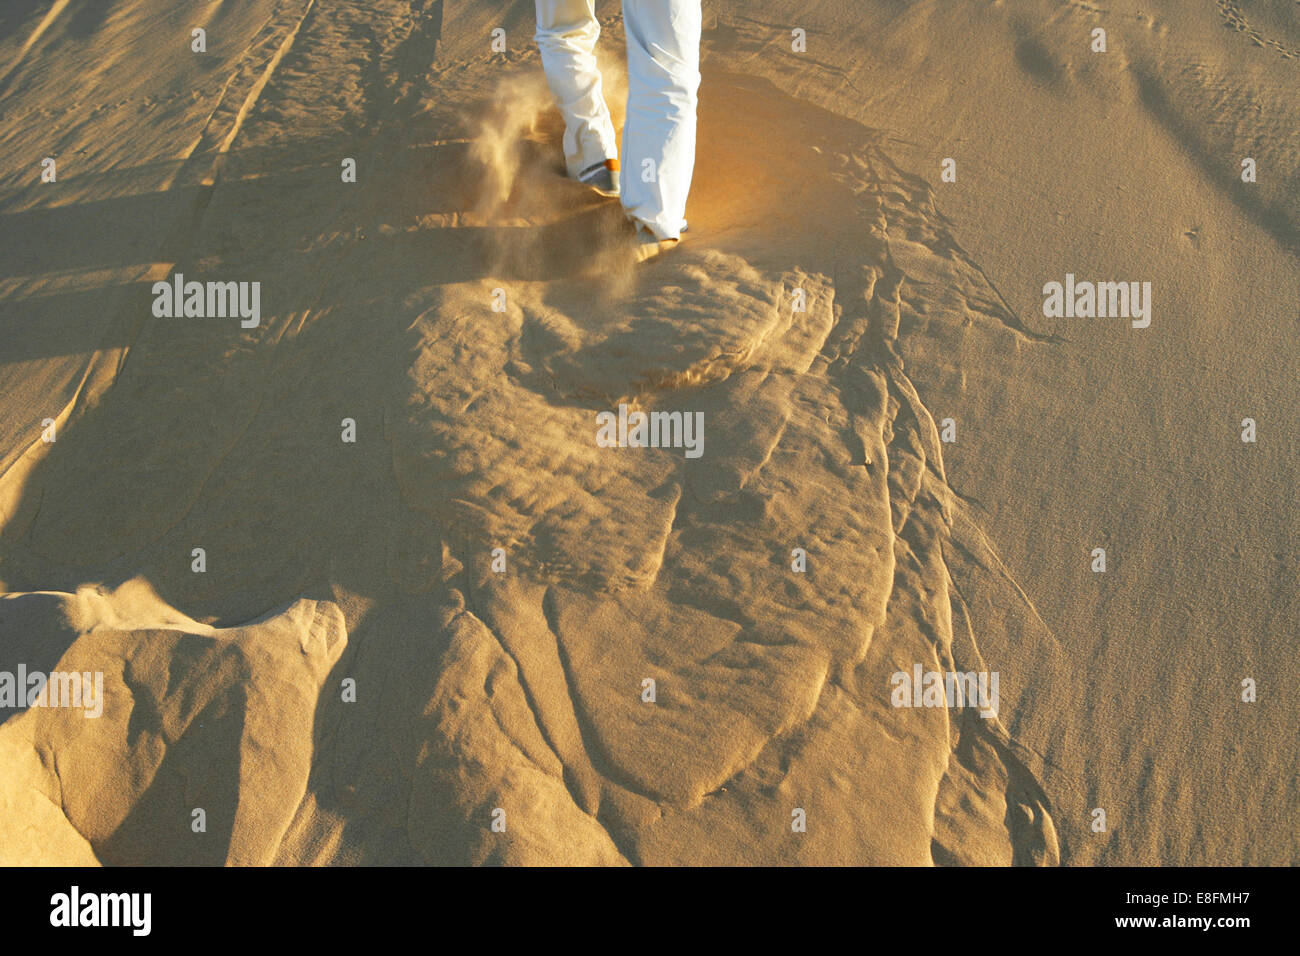 Man running up sand dune Stock Photo